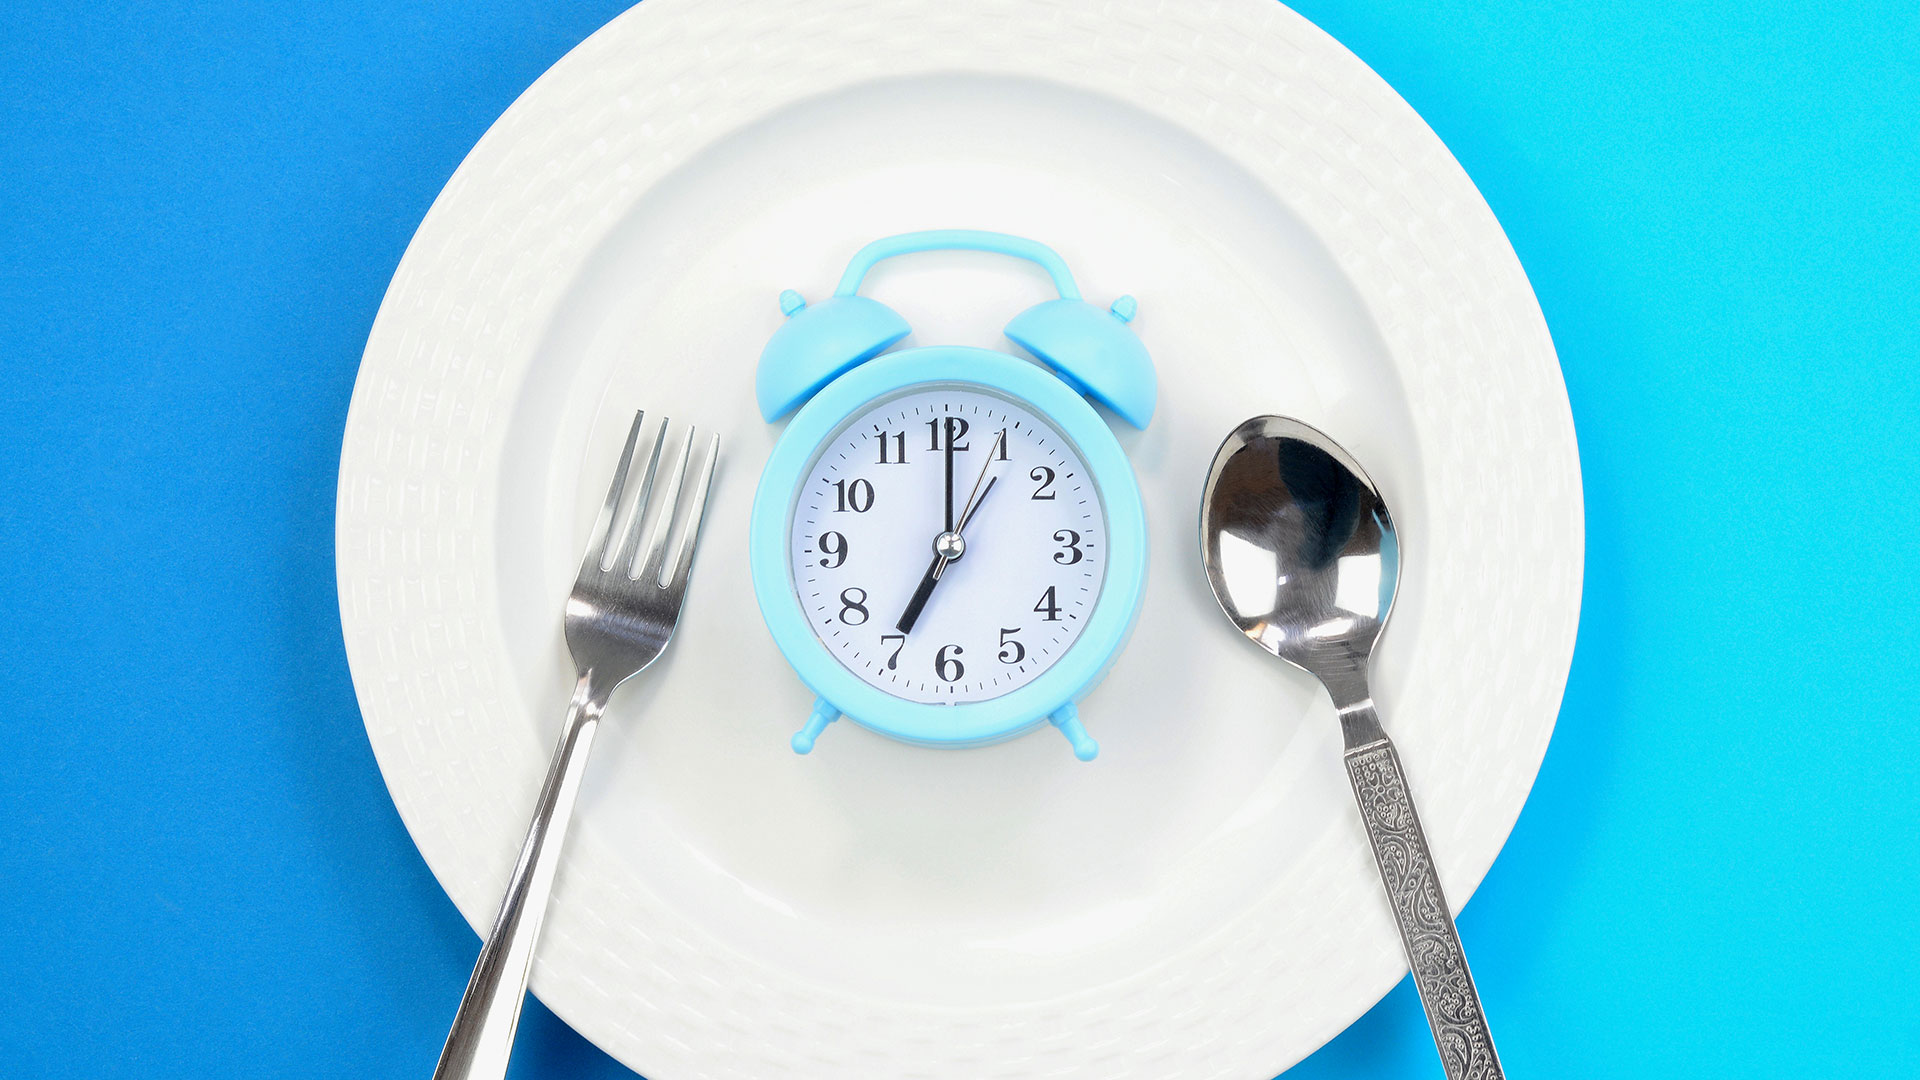 Algunas personas, como saben que pasarán horas sin comer, hacen ingestas mucho mayores para "compensar" /(Getty Images)